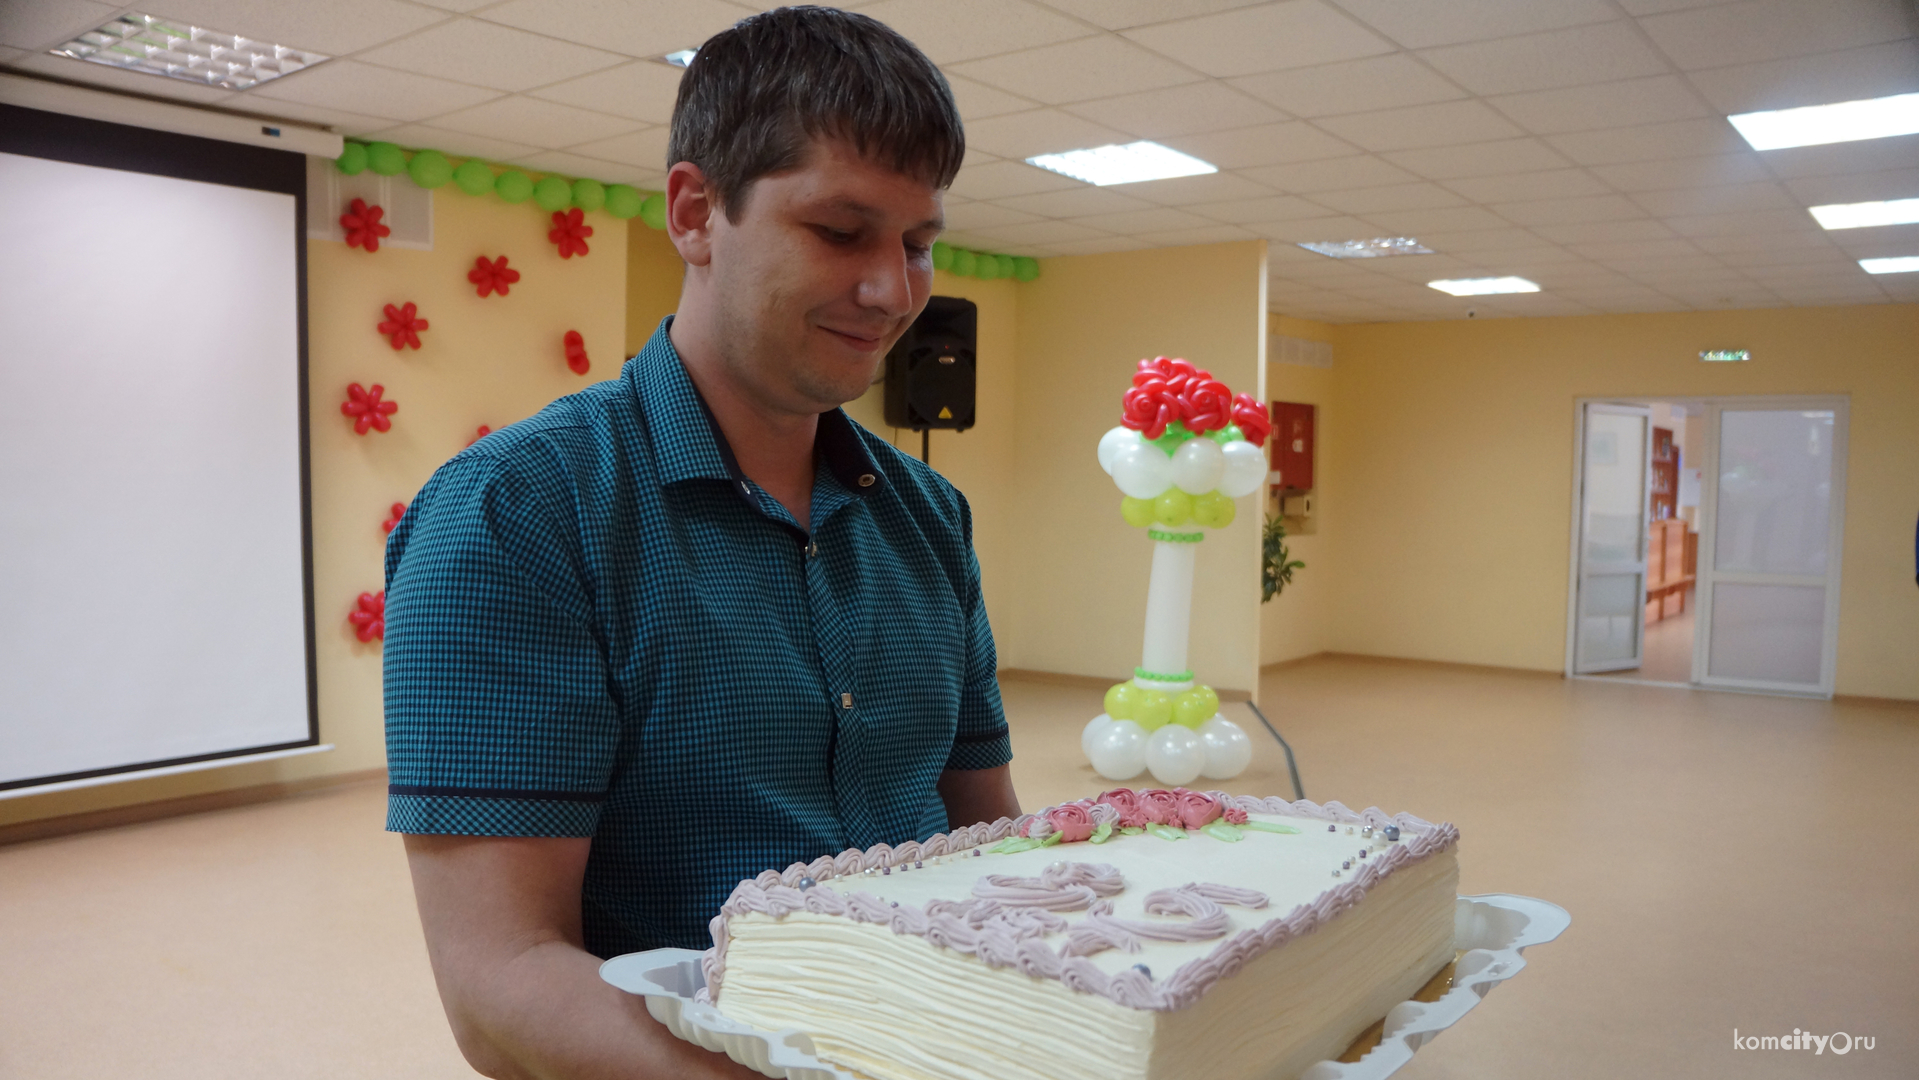 Экскурсию в прошлое библиотеки имени Островского совершили жители Комсомольска-на-Амуре на собрании в честь её 85-летия